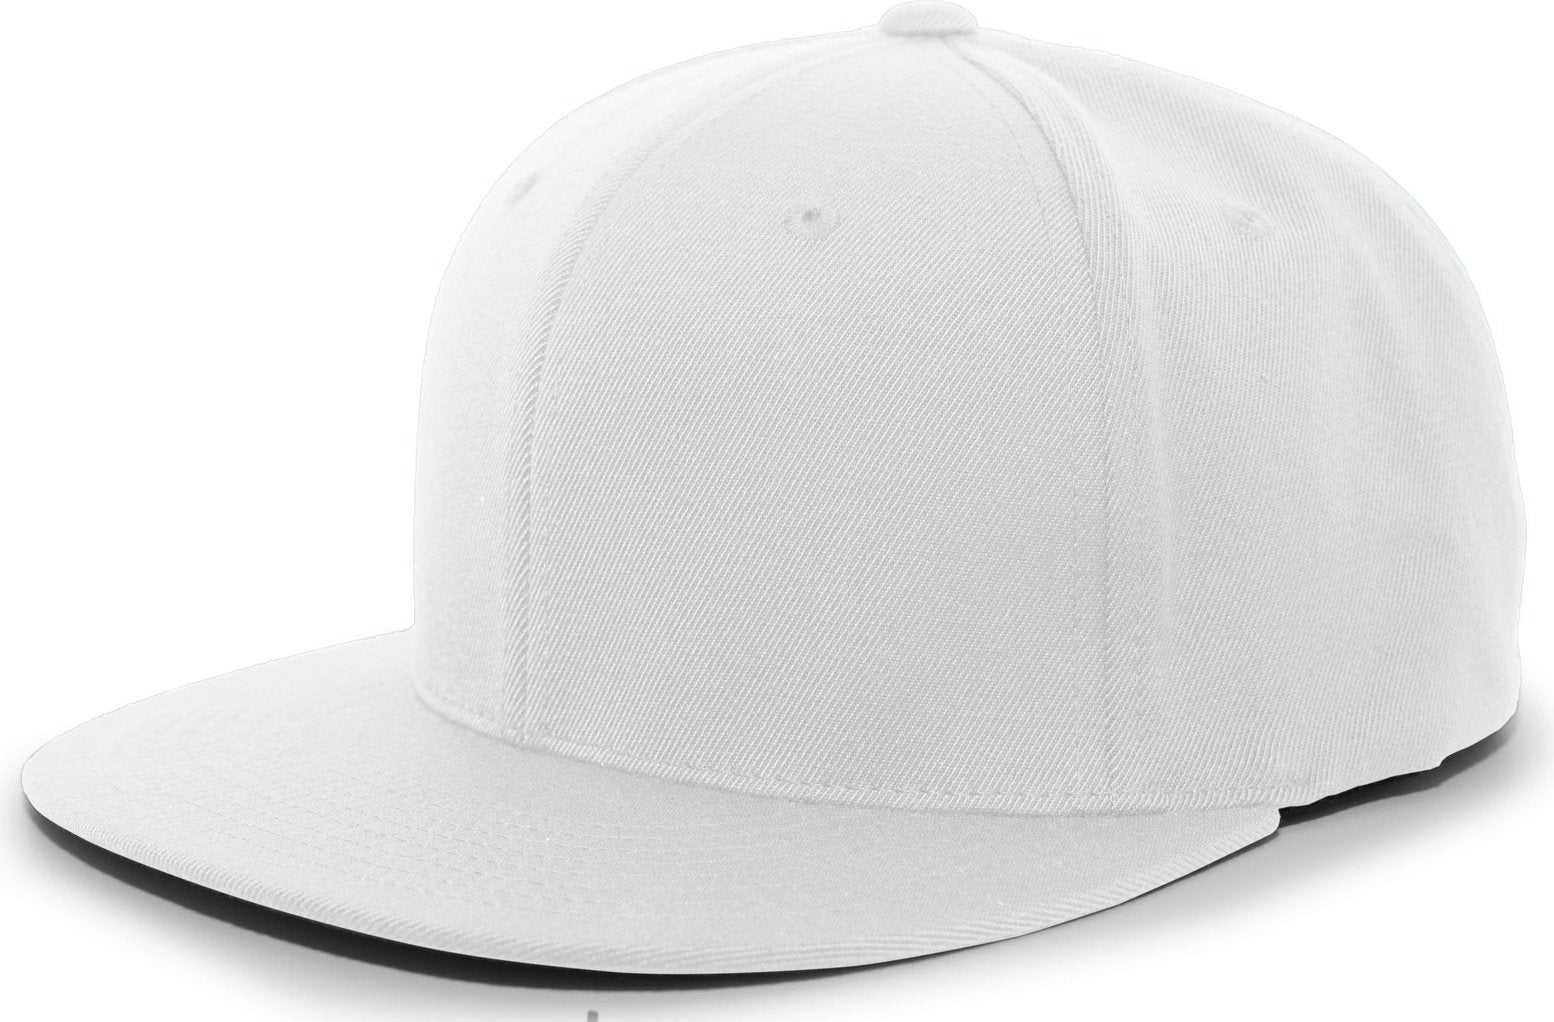 Pacific Headwear 8D5 A/C?ý Performance D-Series Flexfit Cap - White - HIT a Double